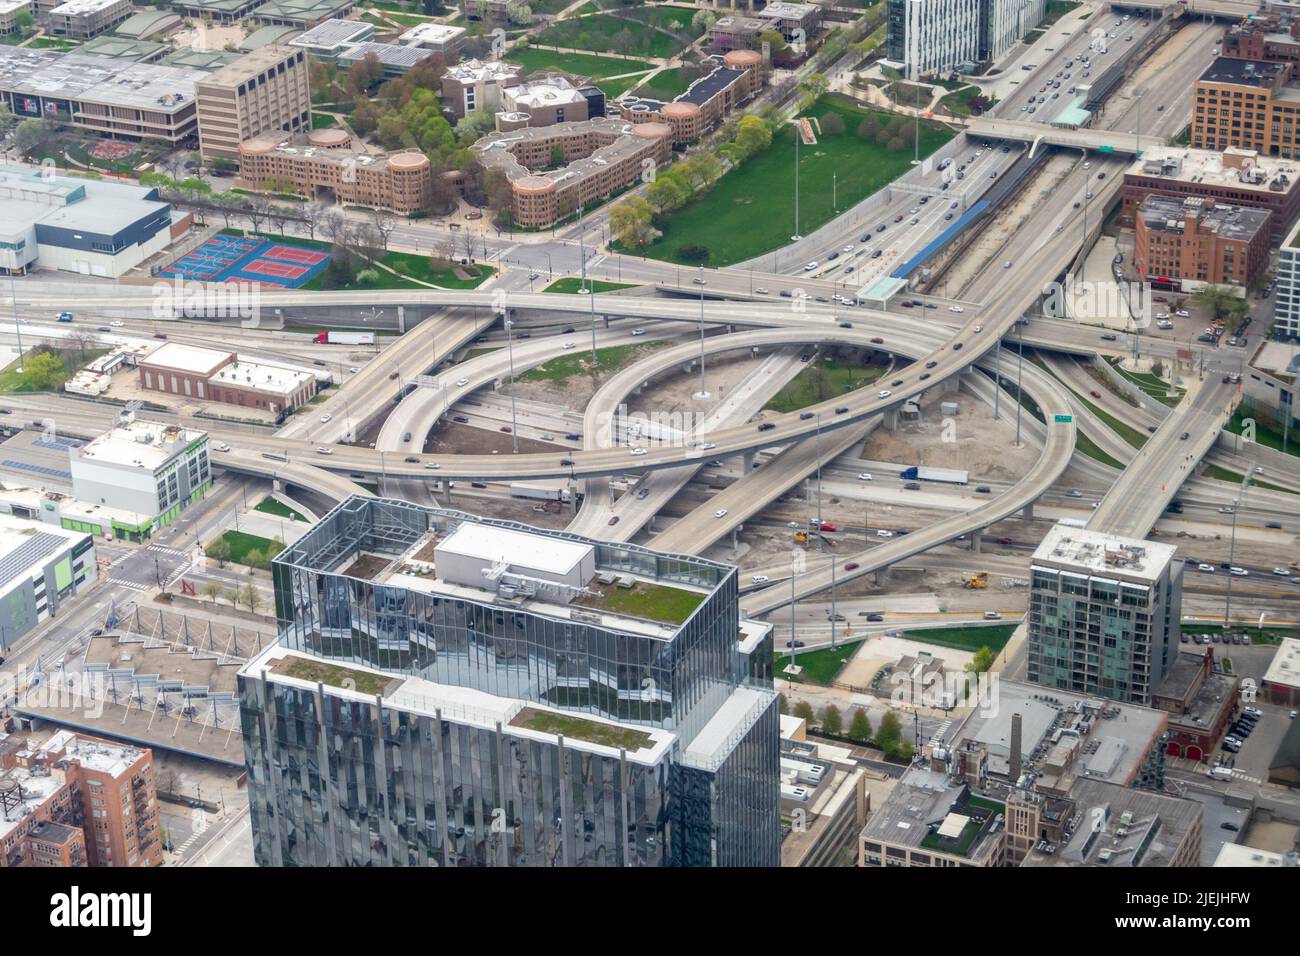 Chicago, Illinois. Vue aérienne de Jane Byrne Interchange (anciennement Circle Interchange). Intersection ou jonction de l'Interstate I-90, I-94 et I-290. ÉTATS-UNIS Banque D'Images